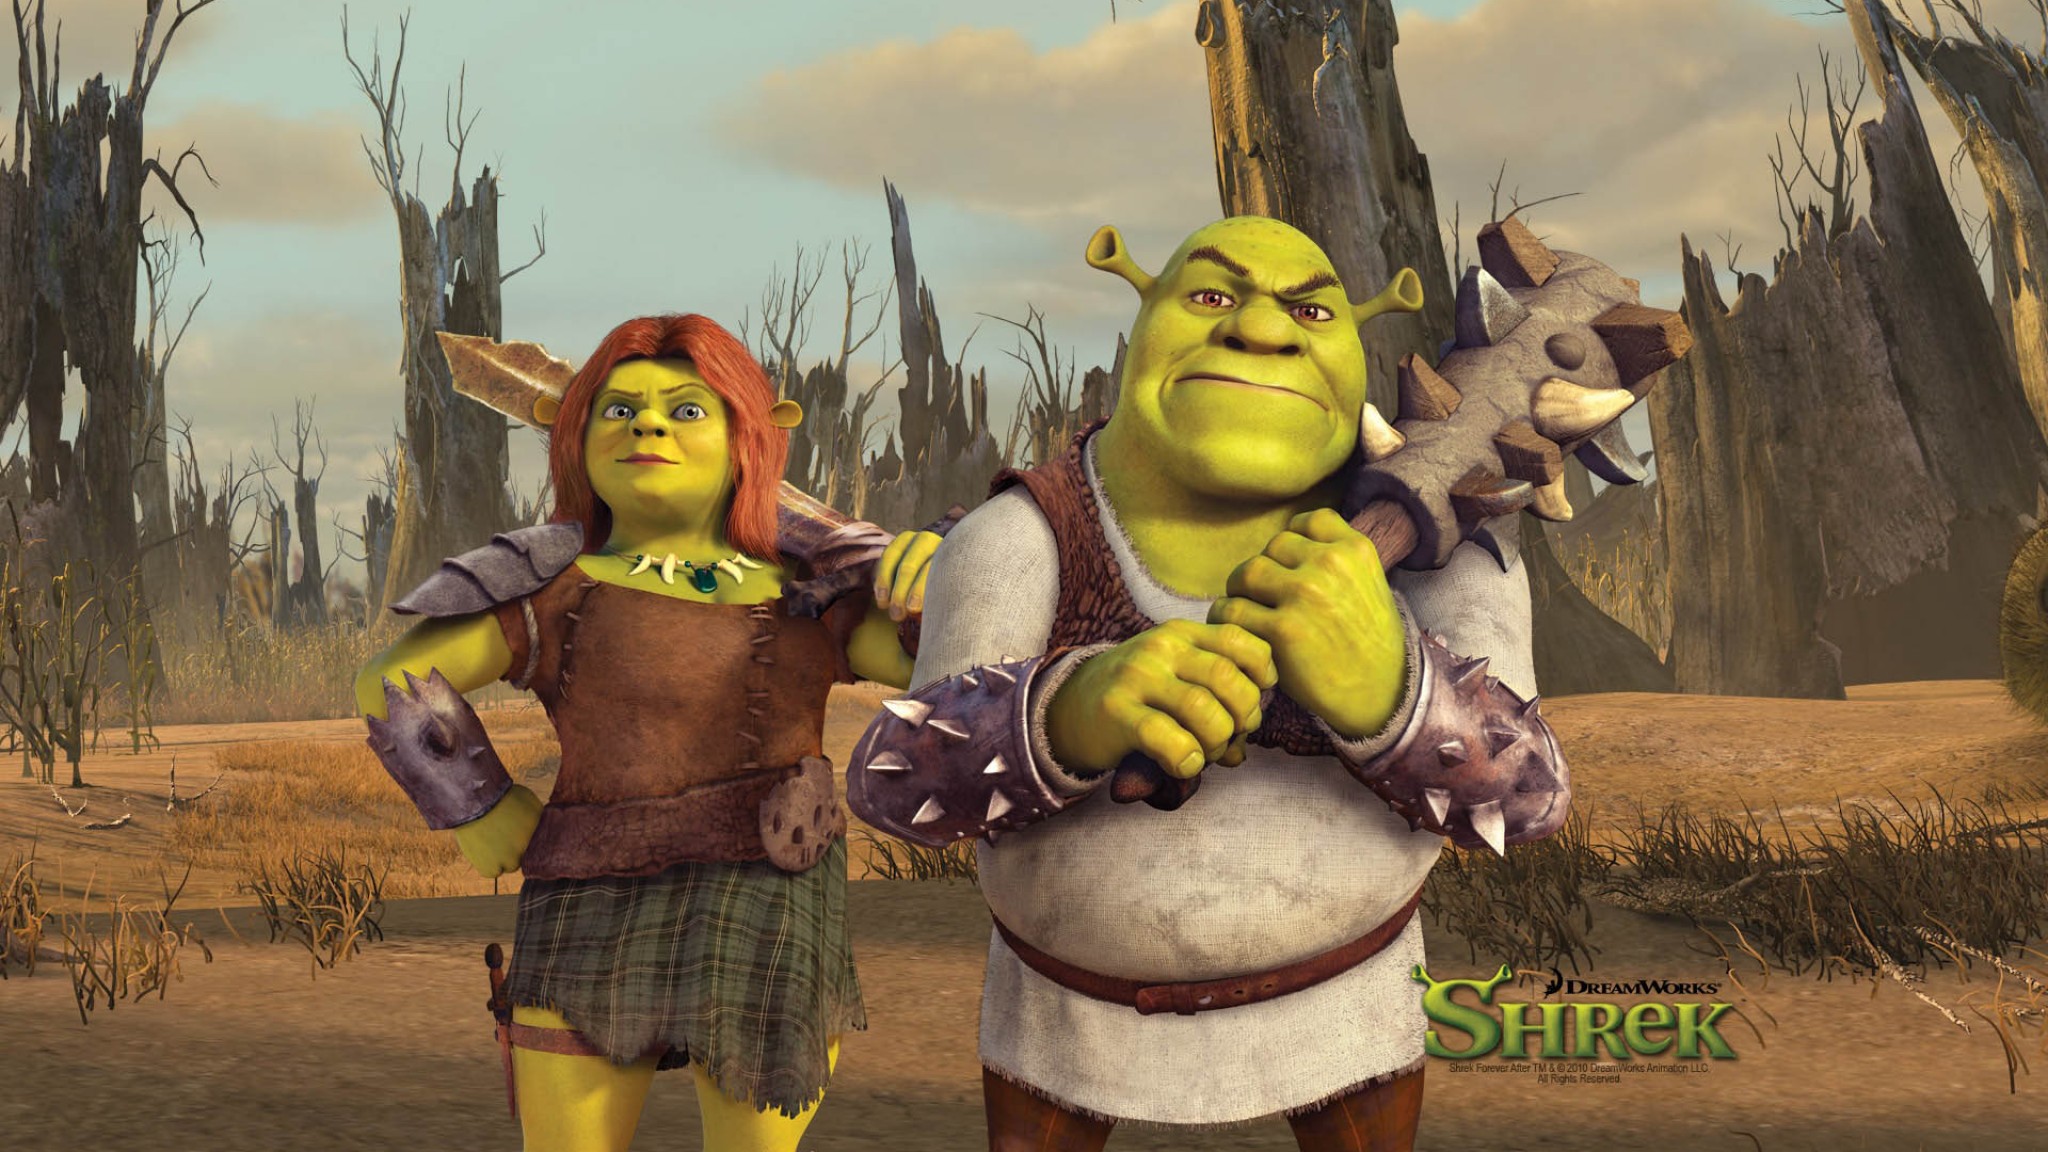 Shrek 5 Reboot Story Explained